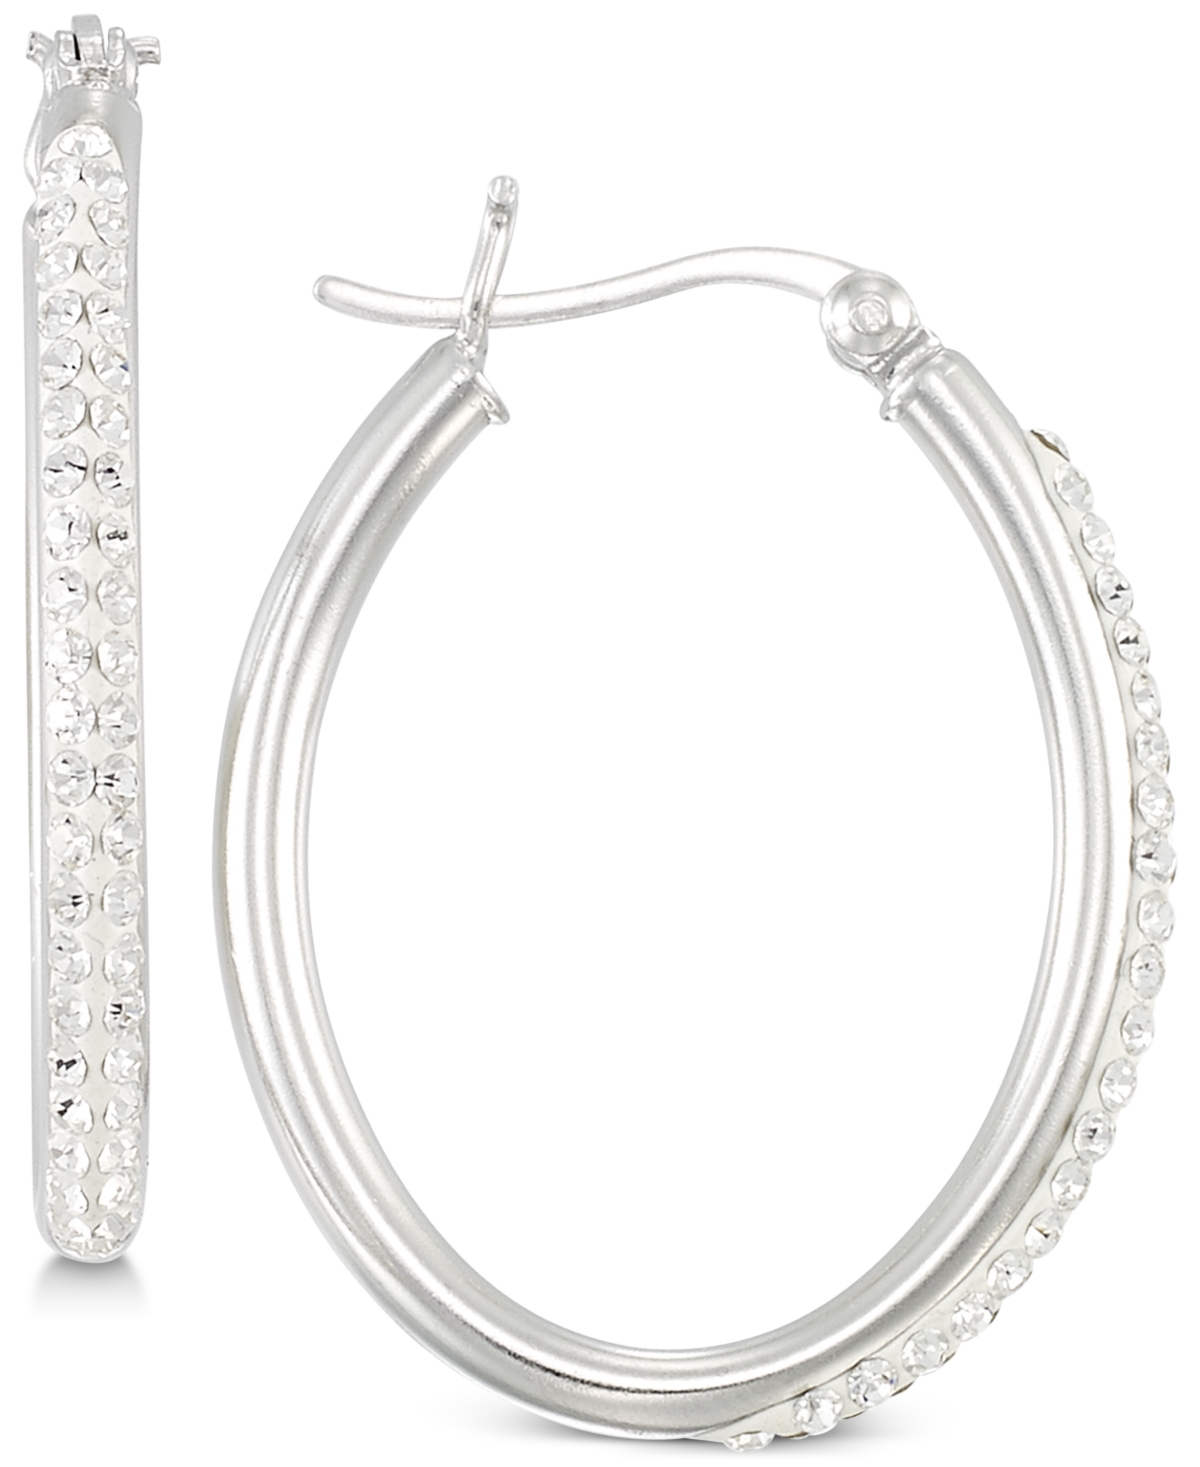 Crystal Hoop Earrings in Sterling Silver - Silver